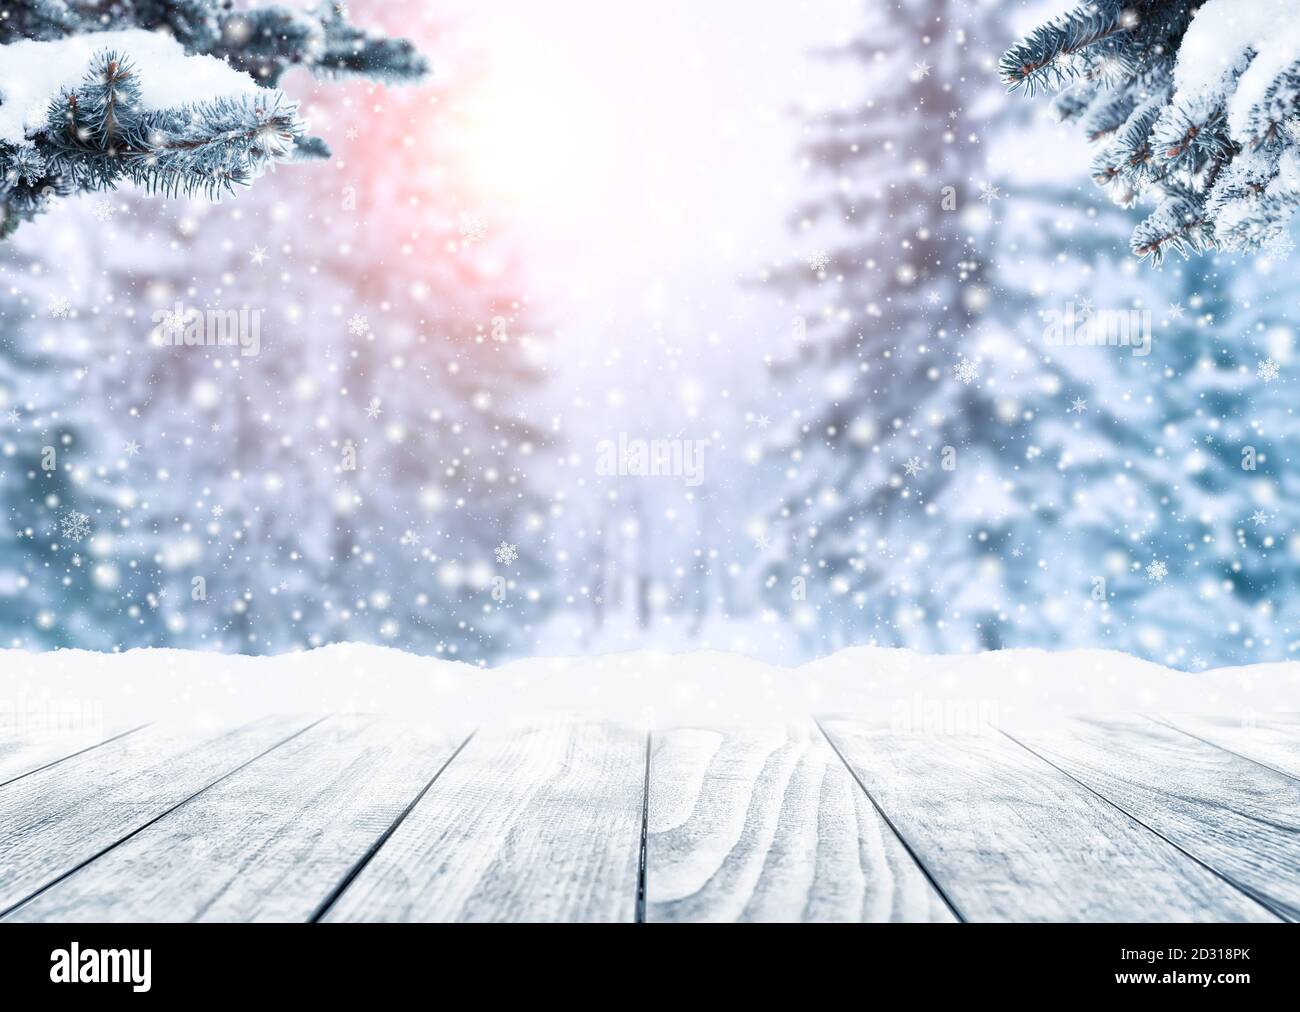 Holztischplatte auf Winter sonnige Landschaft mit Tannen. Frohe Weihnachten und frohes Neues Jahr Gruß Hintergrund. Winterlandschaft mit Schnee und Schnee Stockfoto